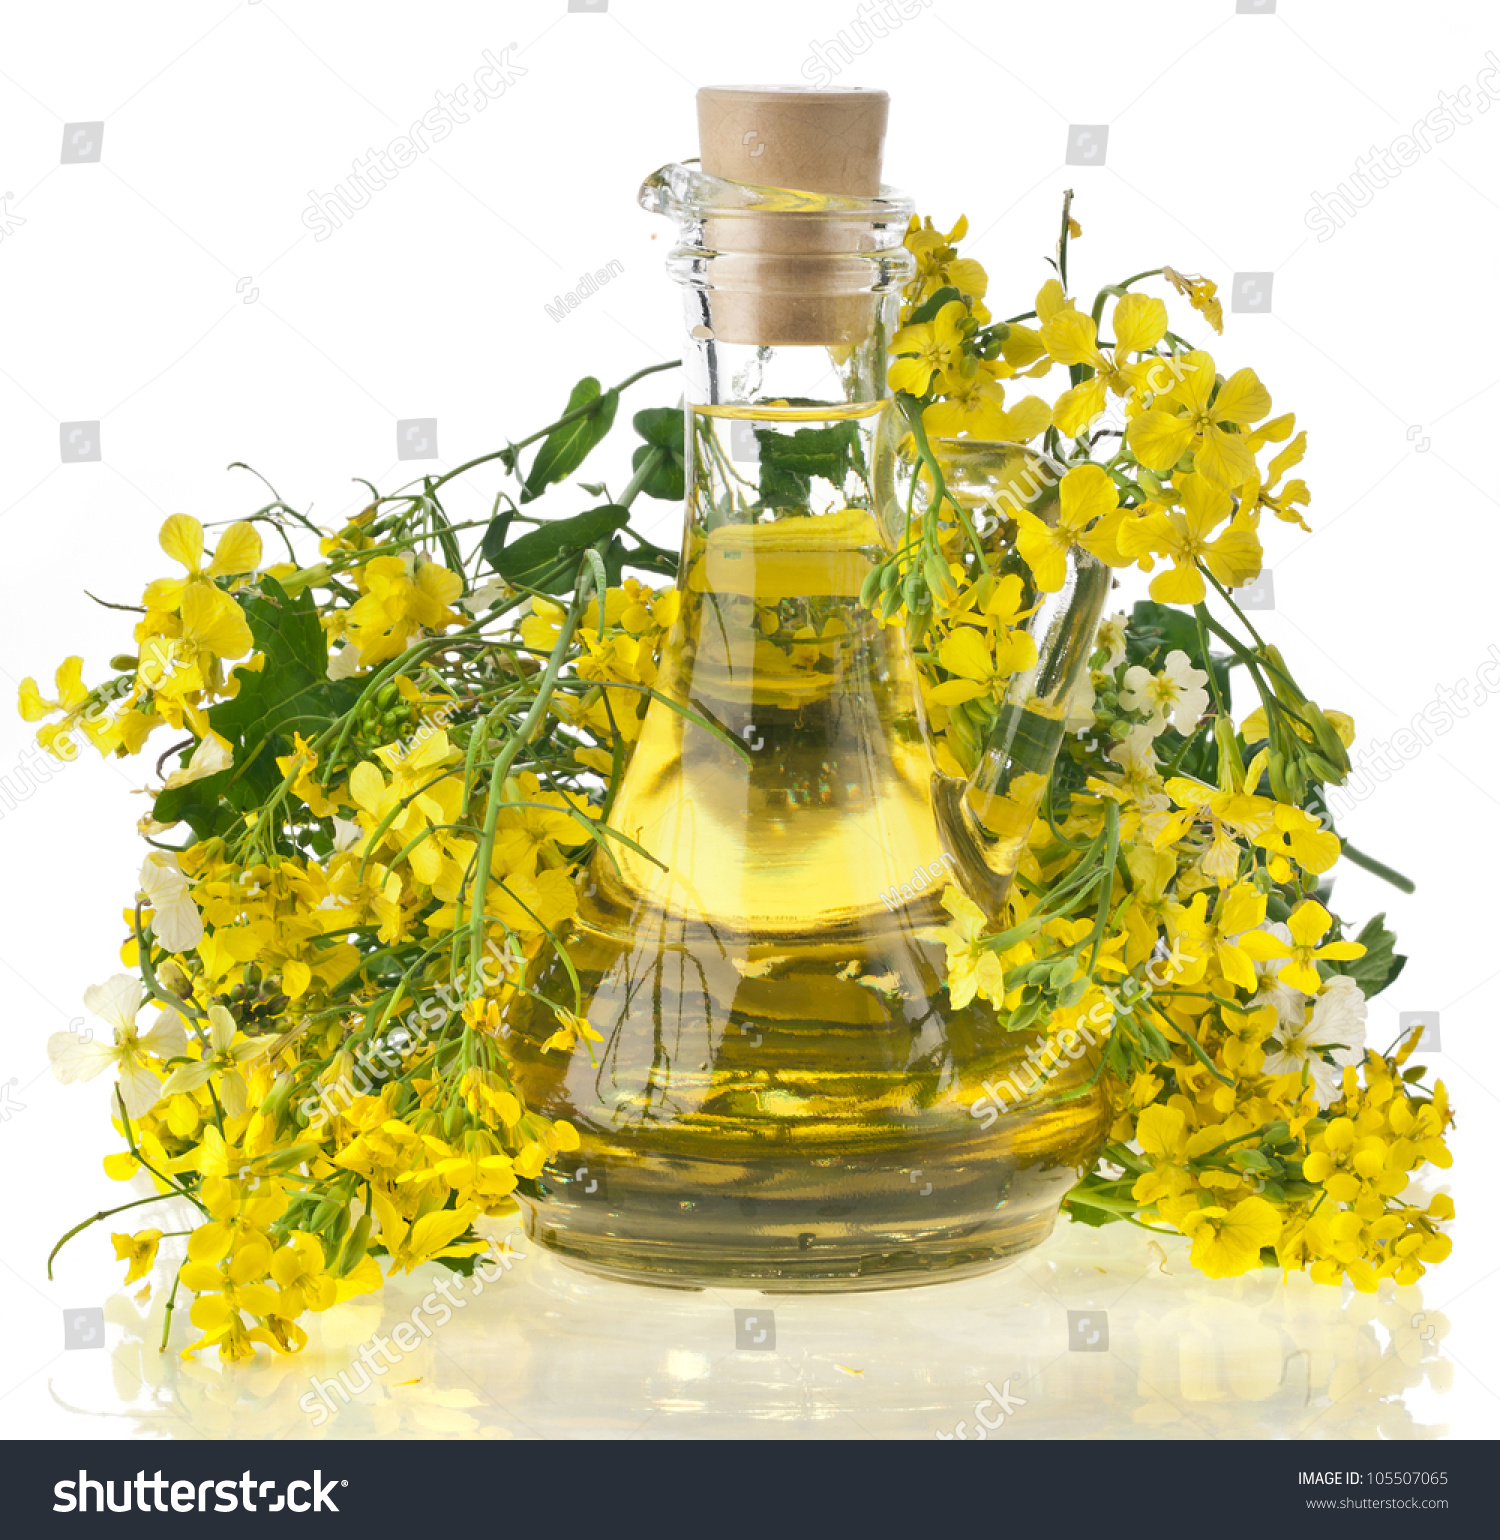 Цветы рапса с маслом